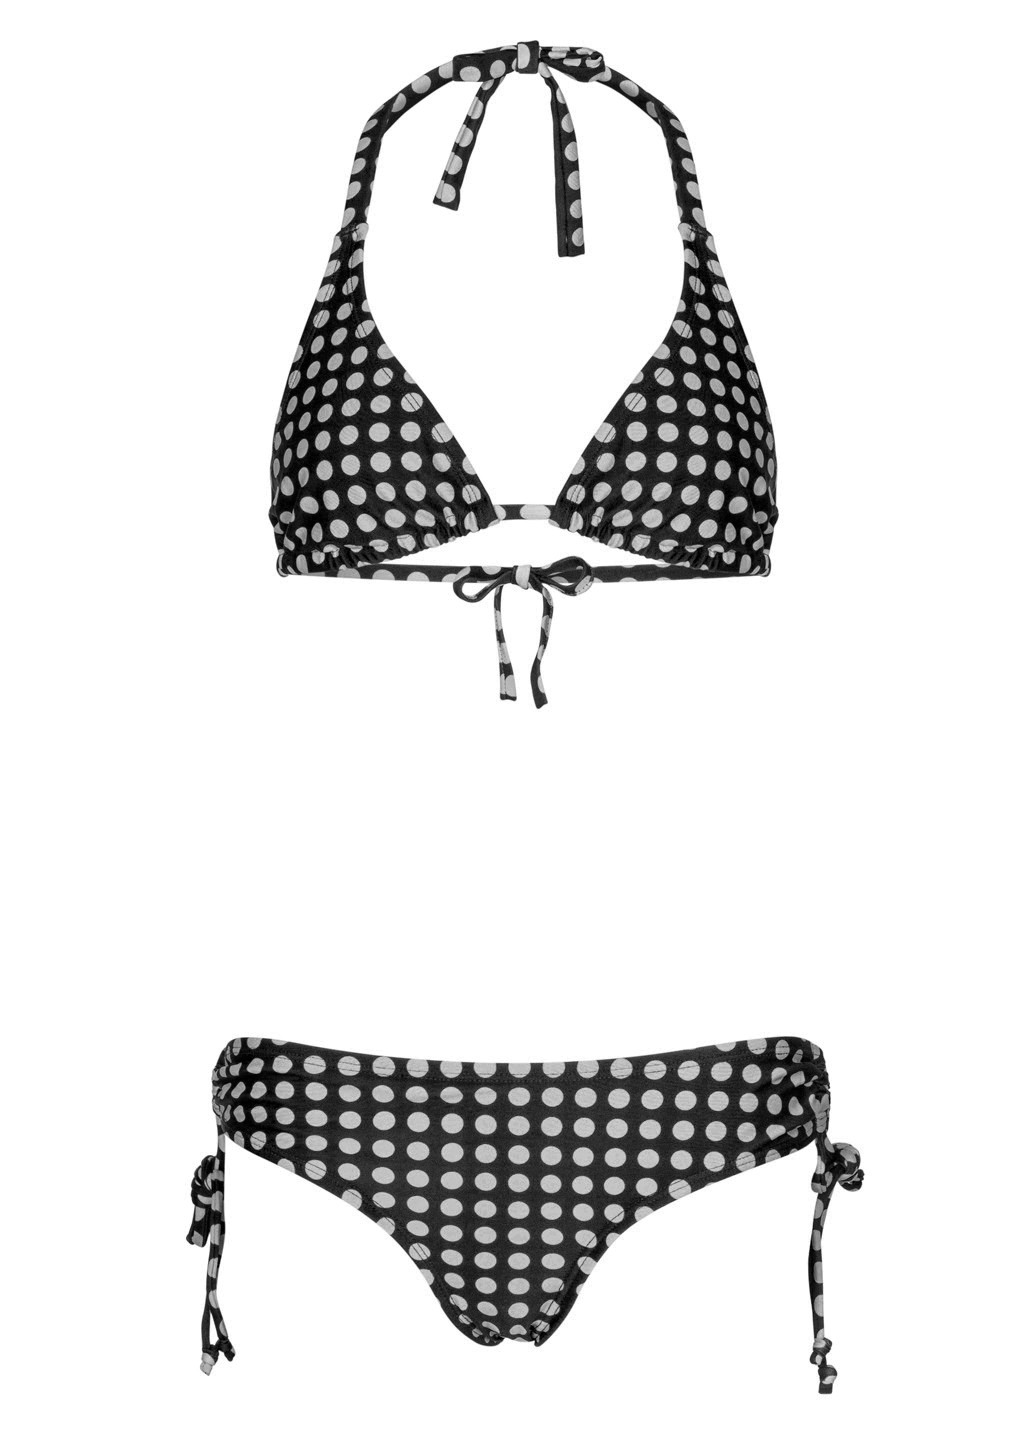 Черный летний купальник в горох раздельный, бикини, халтер Beach Panties